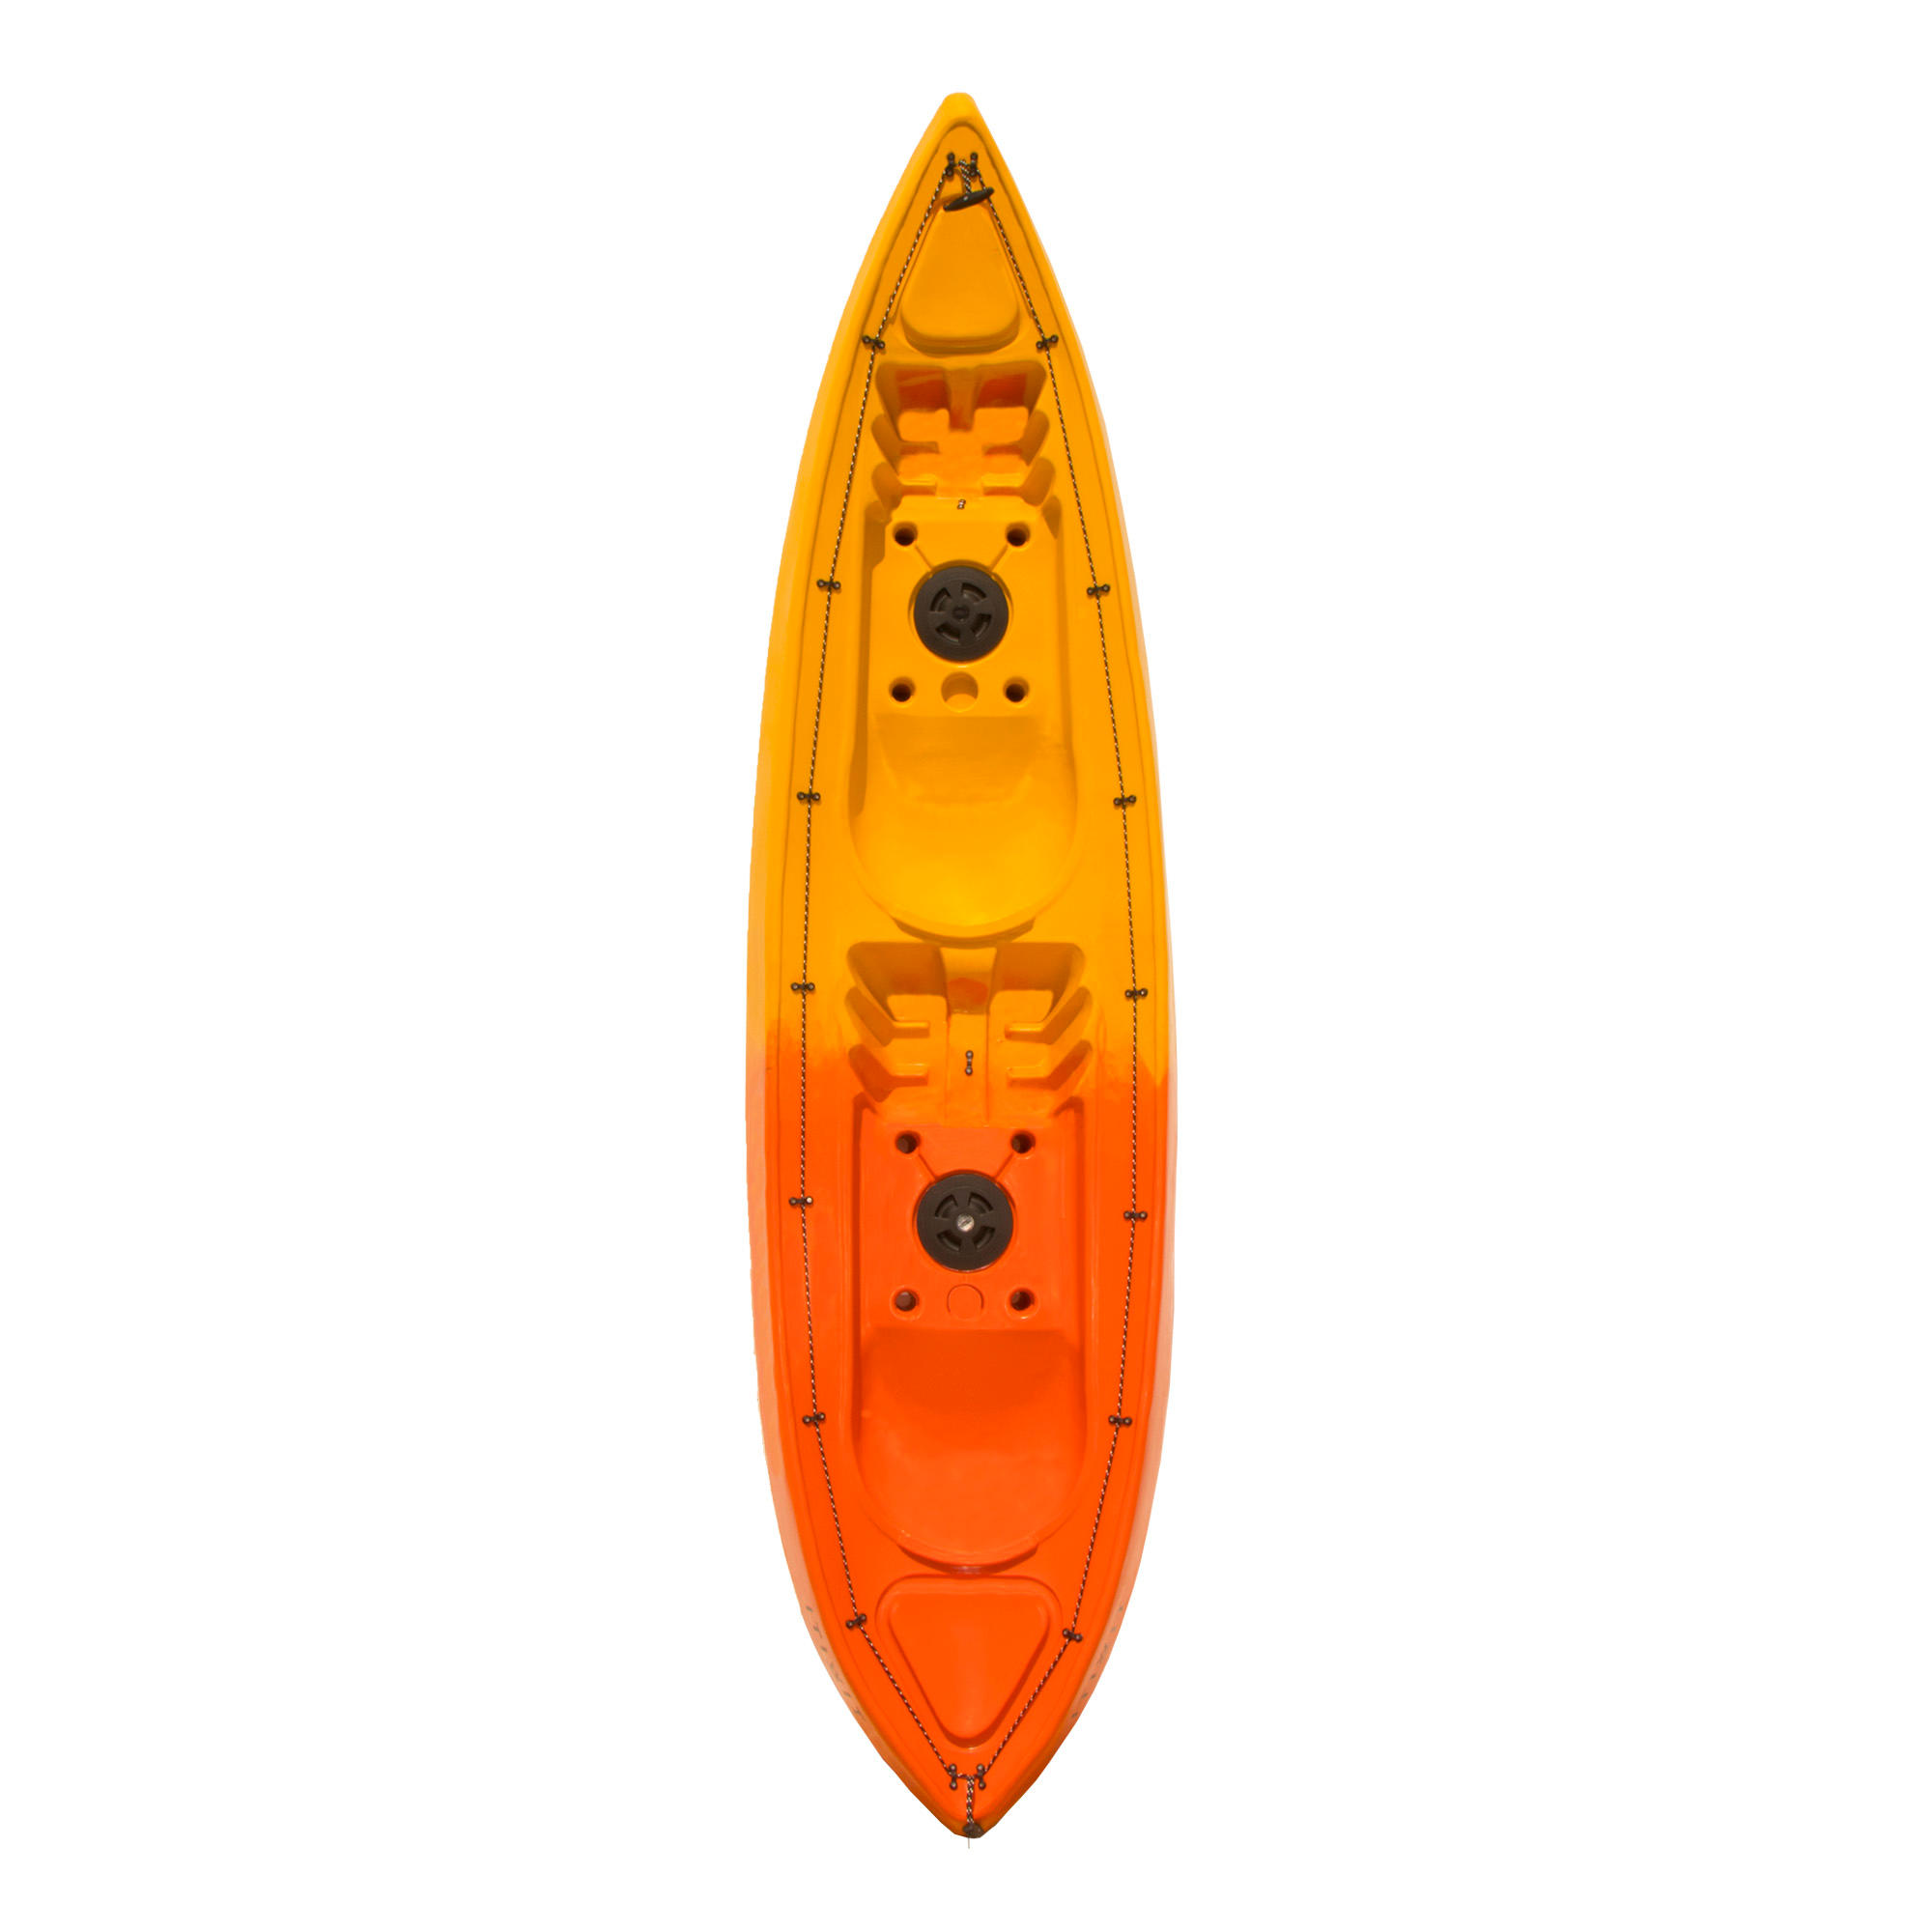 decathlon kayak price